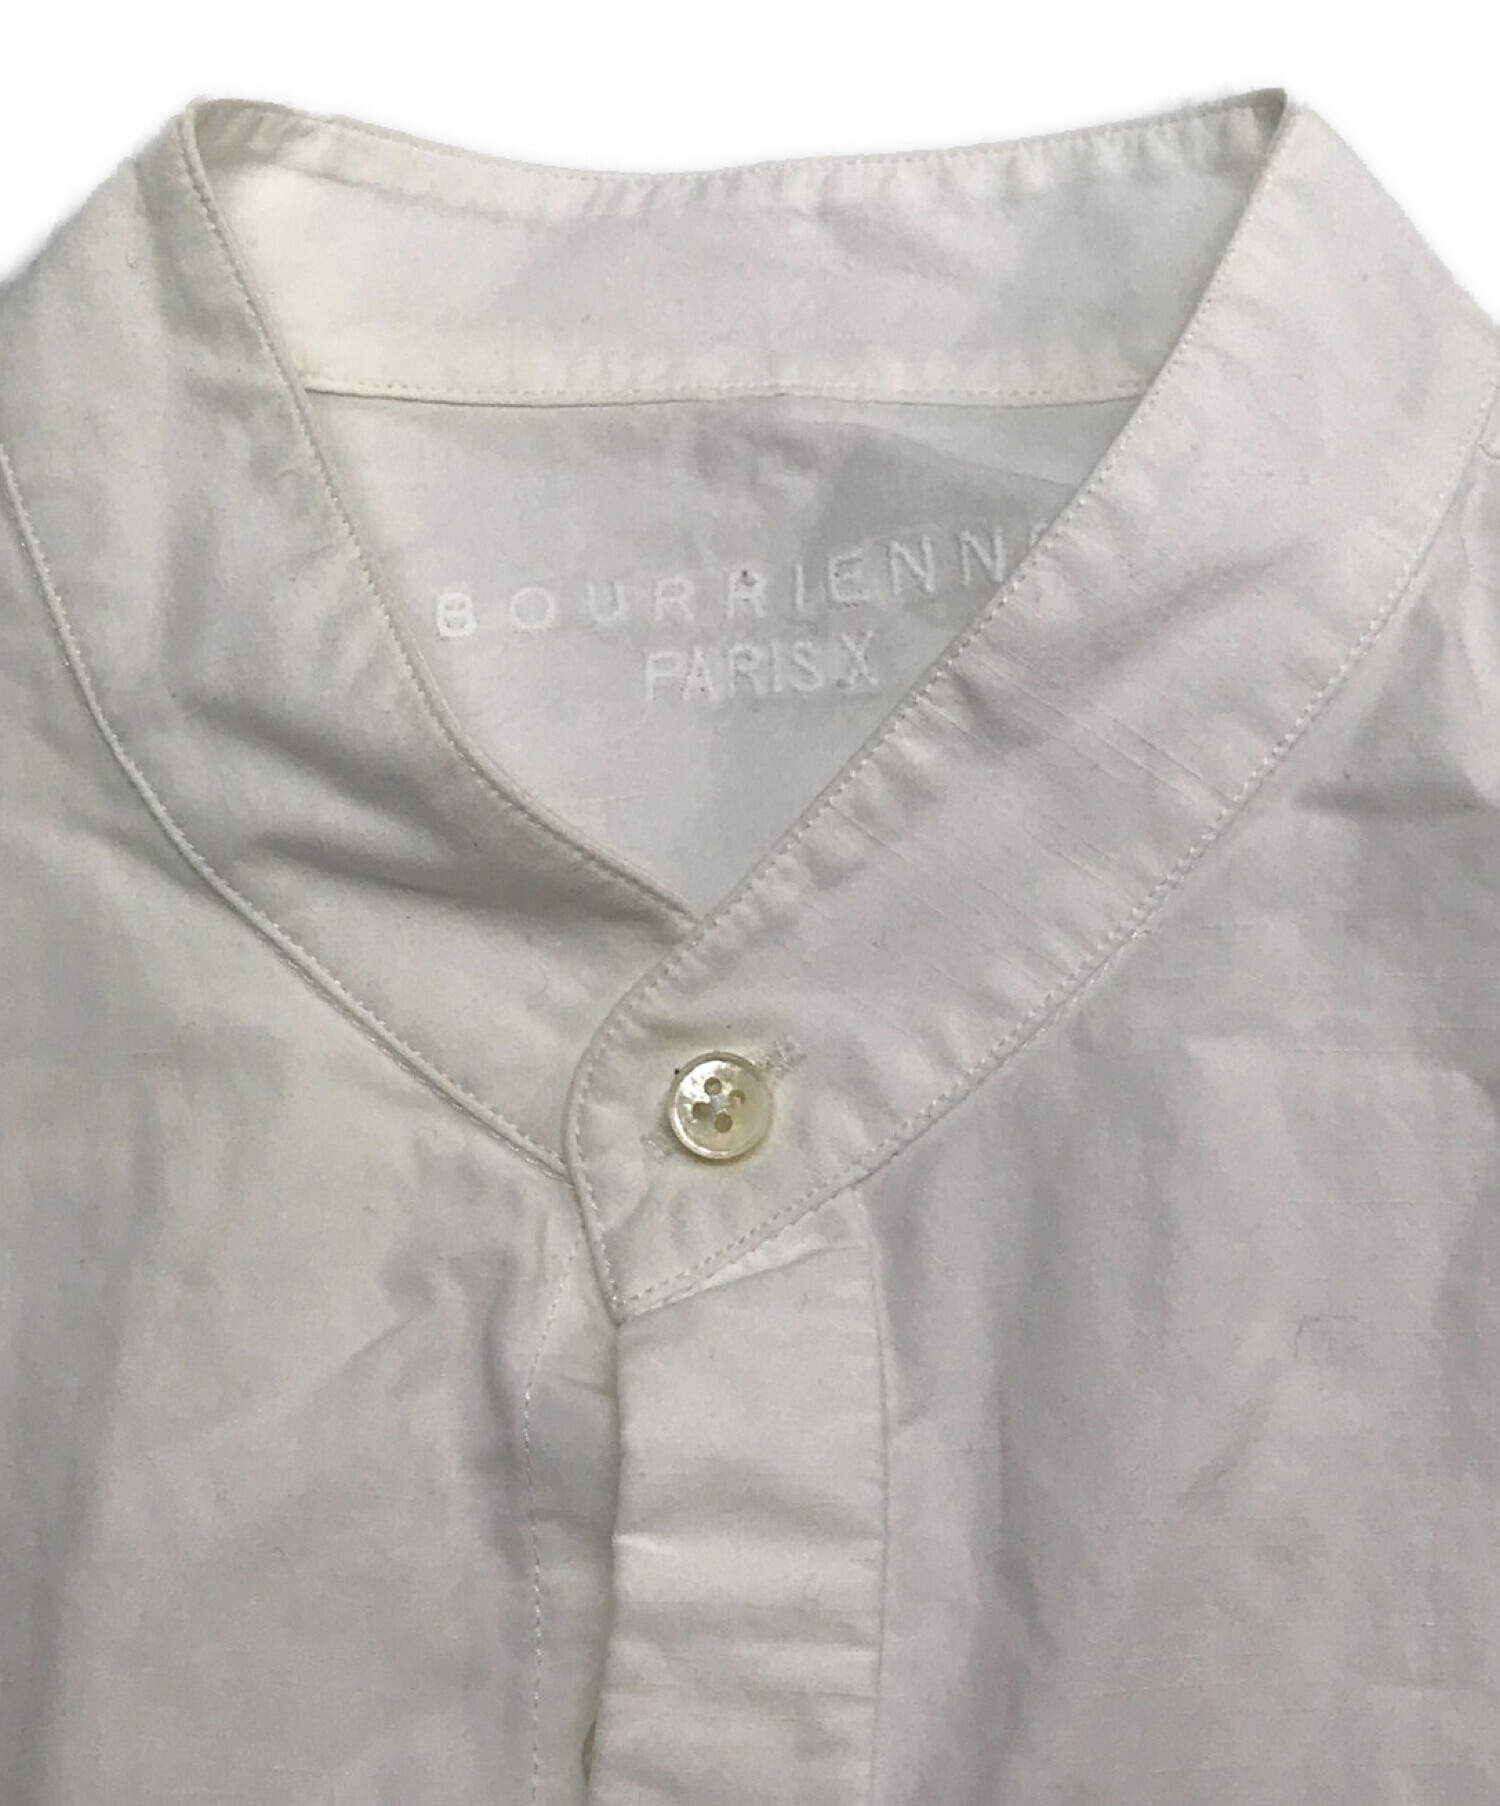 BOURRIENNE PARIS X (ブーリエンヌ) バンドカラーシャツ / 長袖ブラウス / ドレスシャツ ホワイト サイズ:M